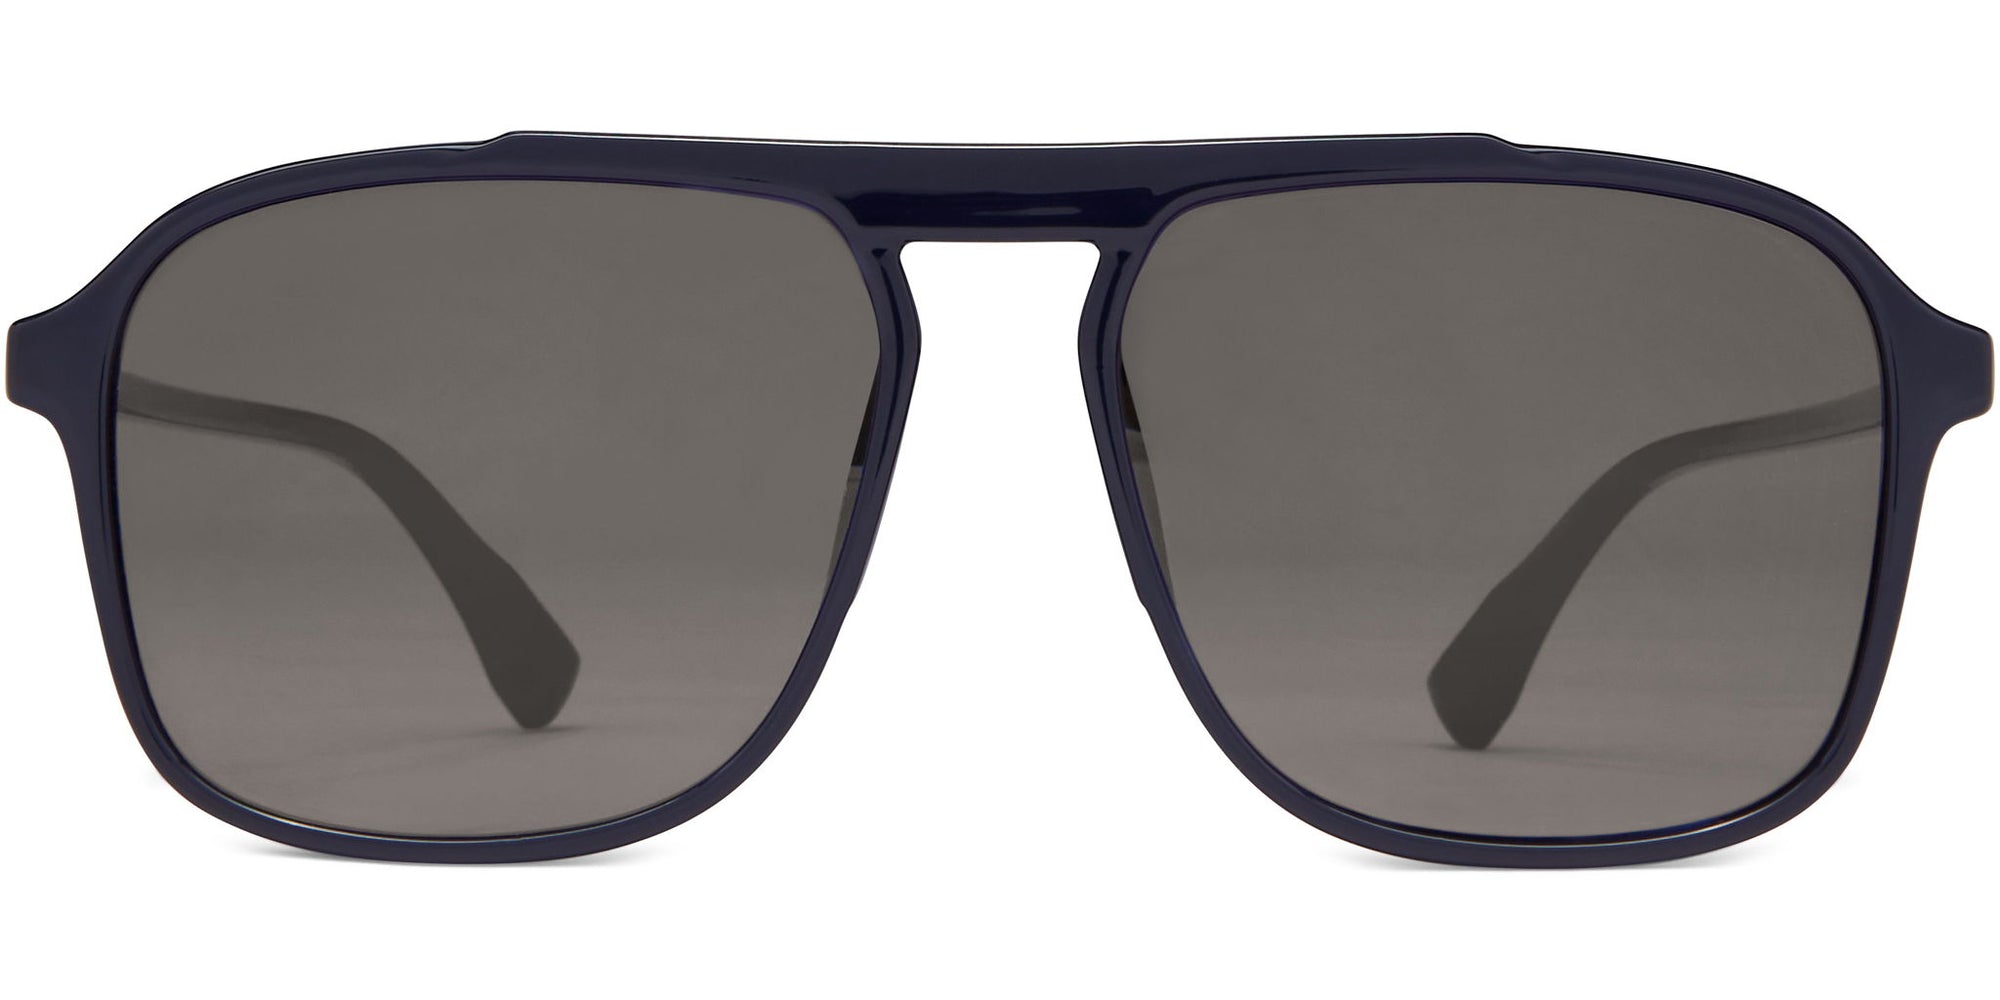 Baker - Navy/Gray Lens - Sunglasses